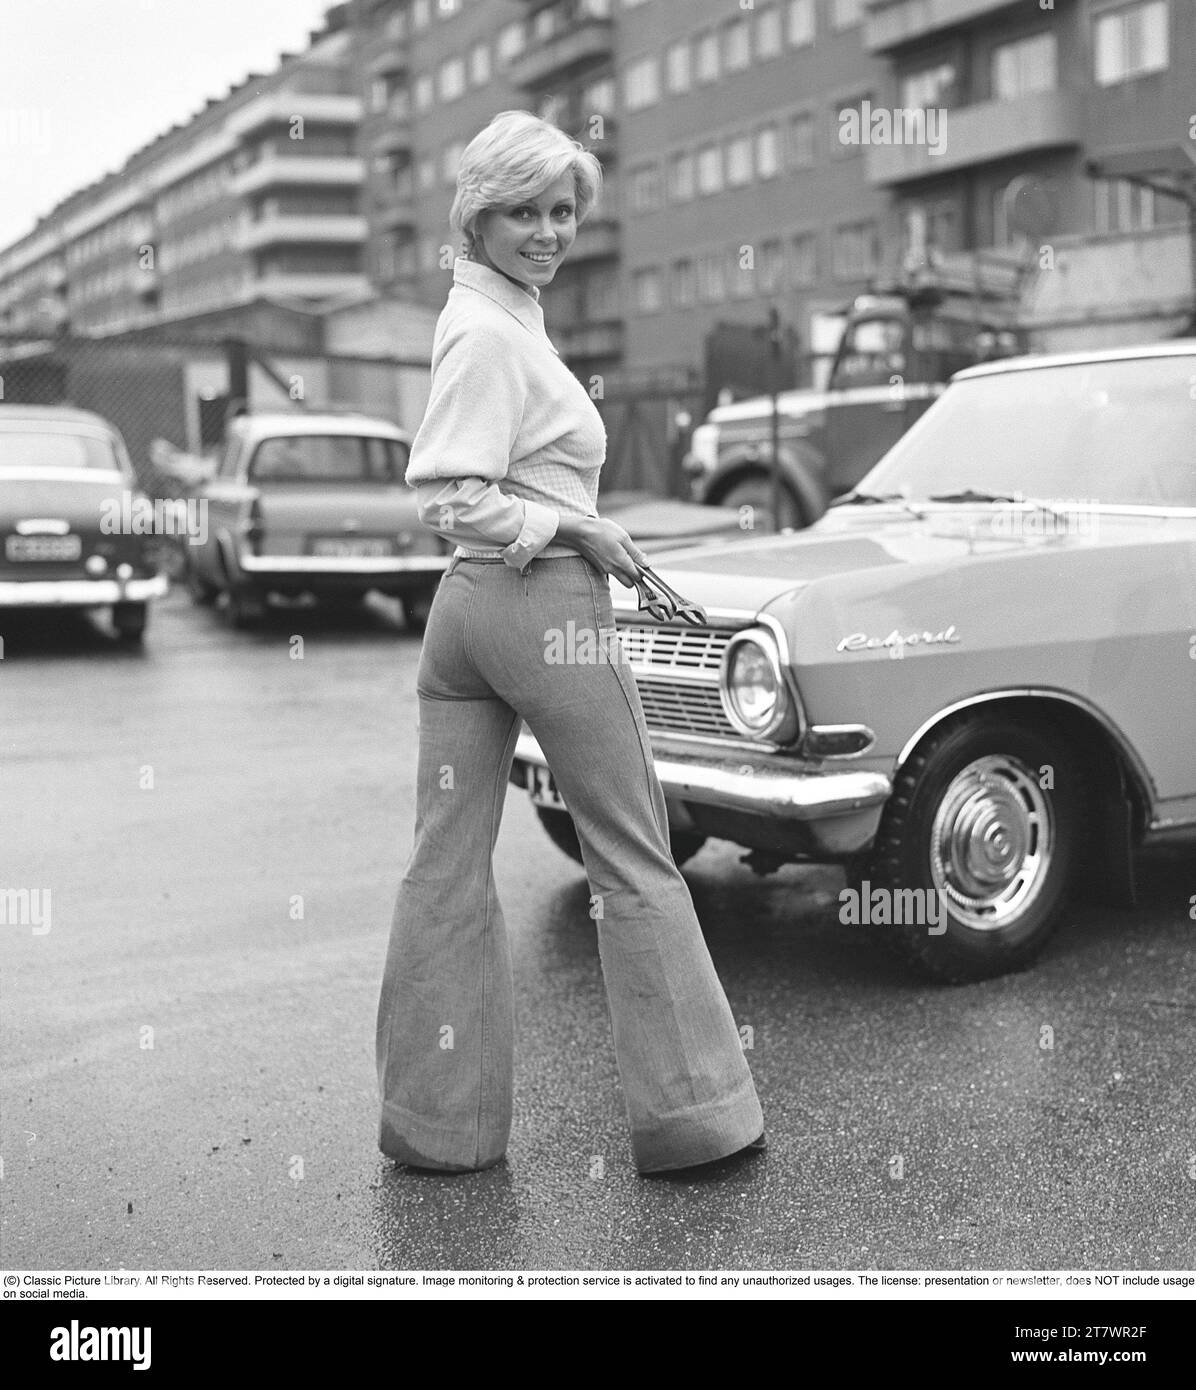 La mode des années 1970 Une jeune femme portant la mode typique des années 1970, un pantalon à jambes larges. Un style appelé Bell-bottols ou fares, pantalons qui s'élargissent des genoux et vers le bas, formant une forme de cloche de la jambe du pantalon. 1971. Kristoffersson réf. EF65 Banque D'Images